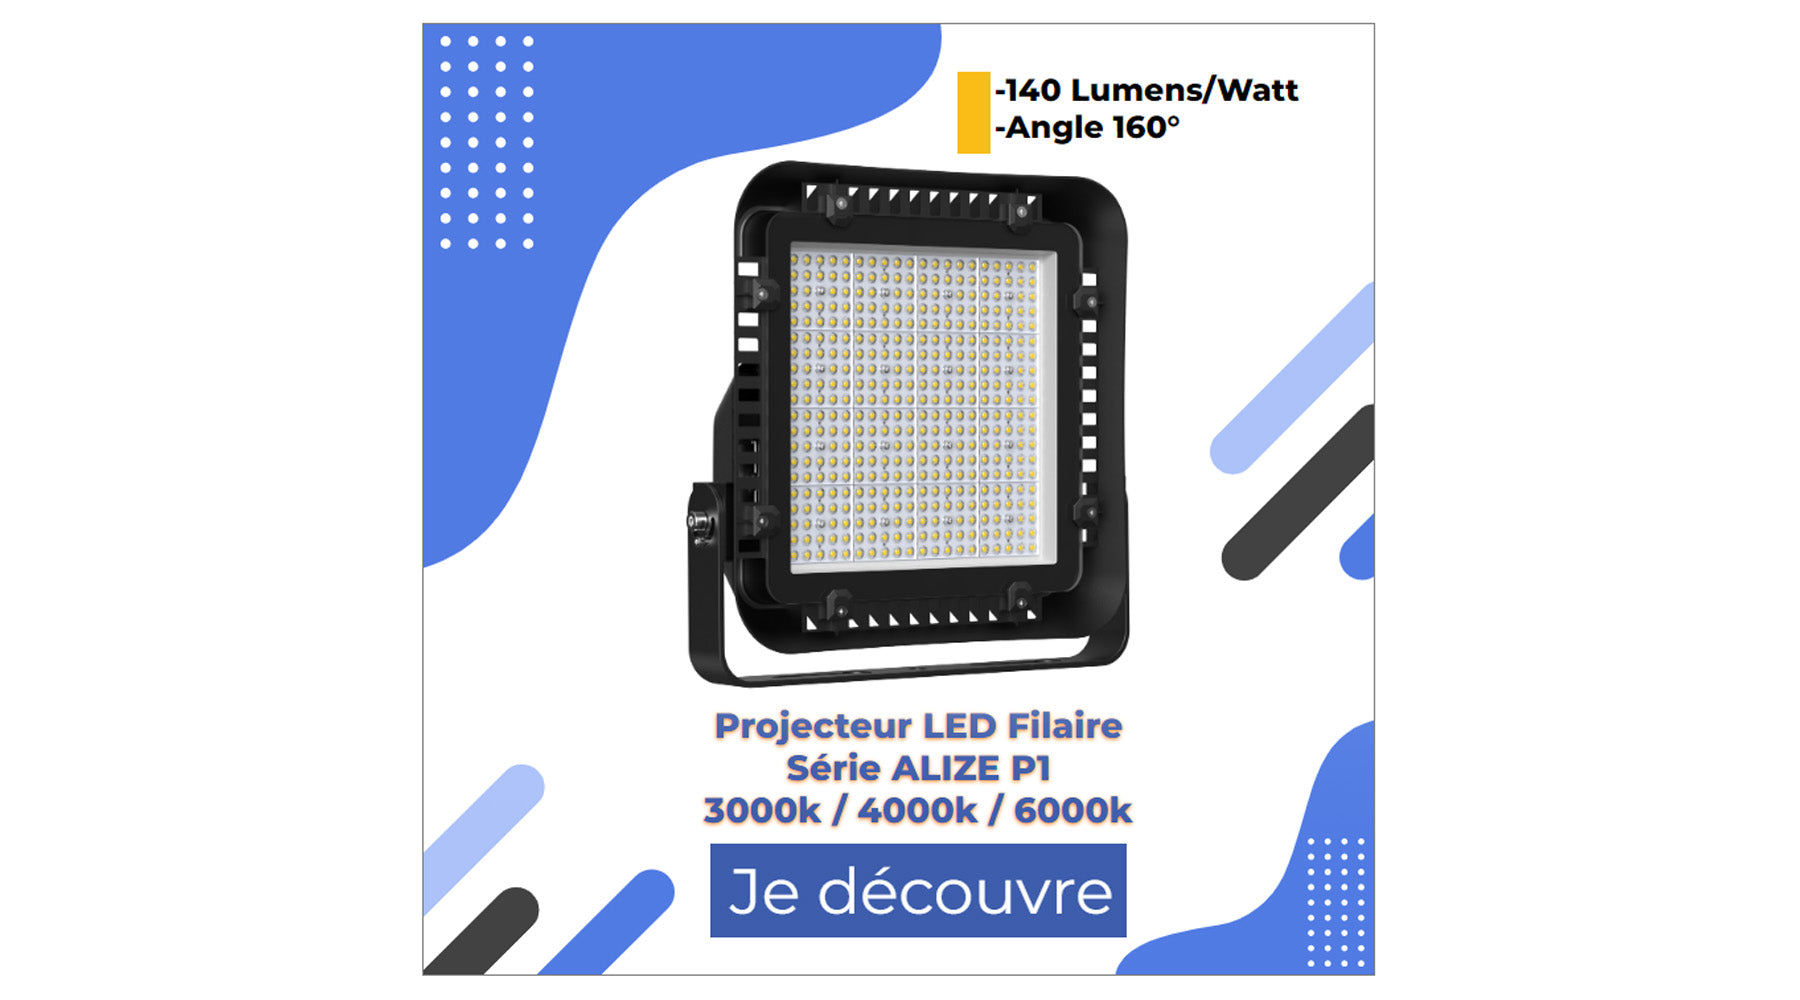 [NOUVEAU] Projecteur LED filaire - Série ALIZE P1